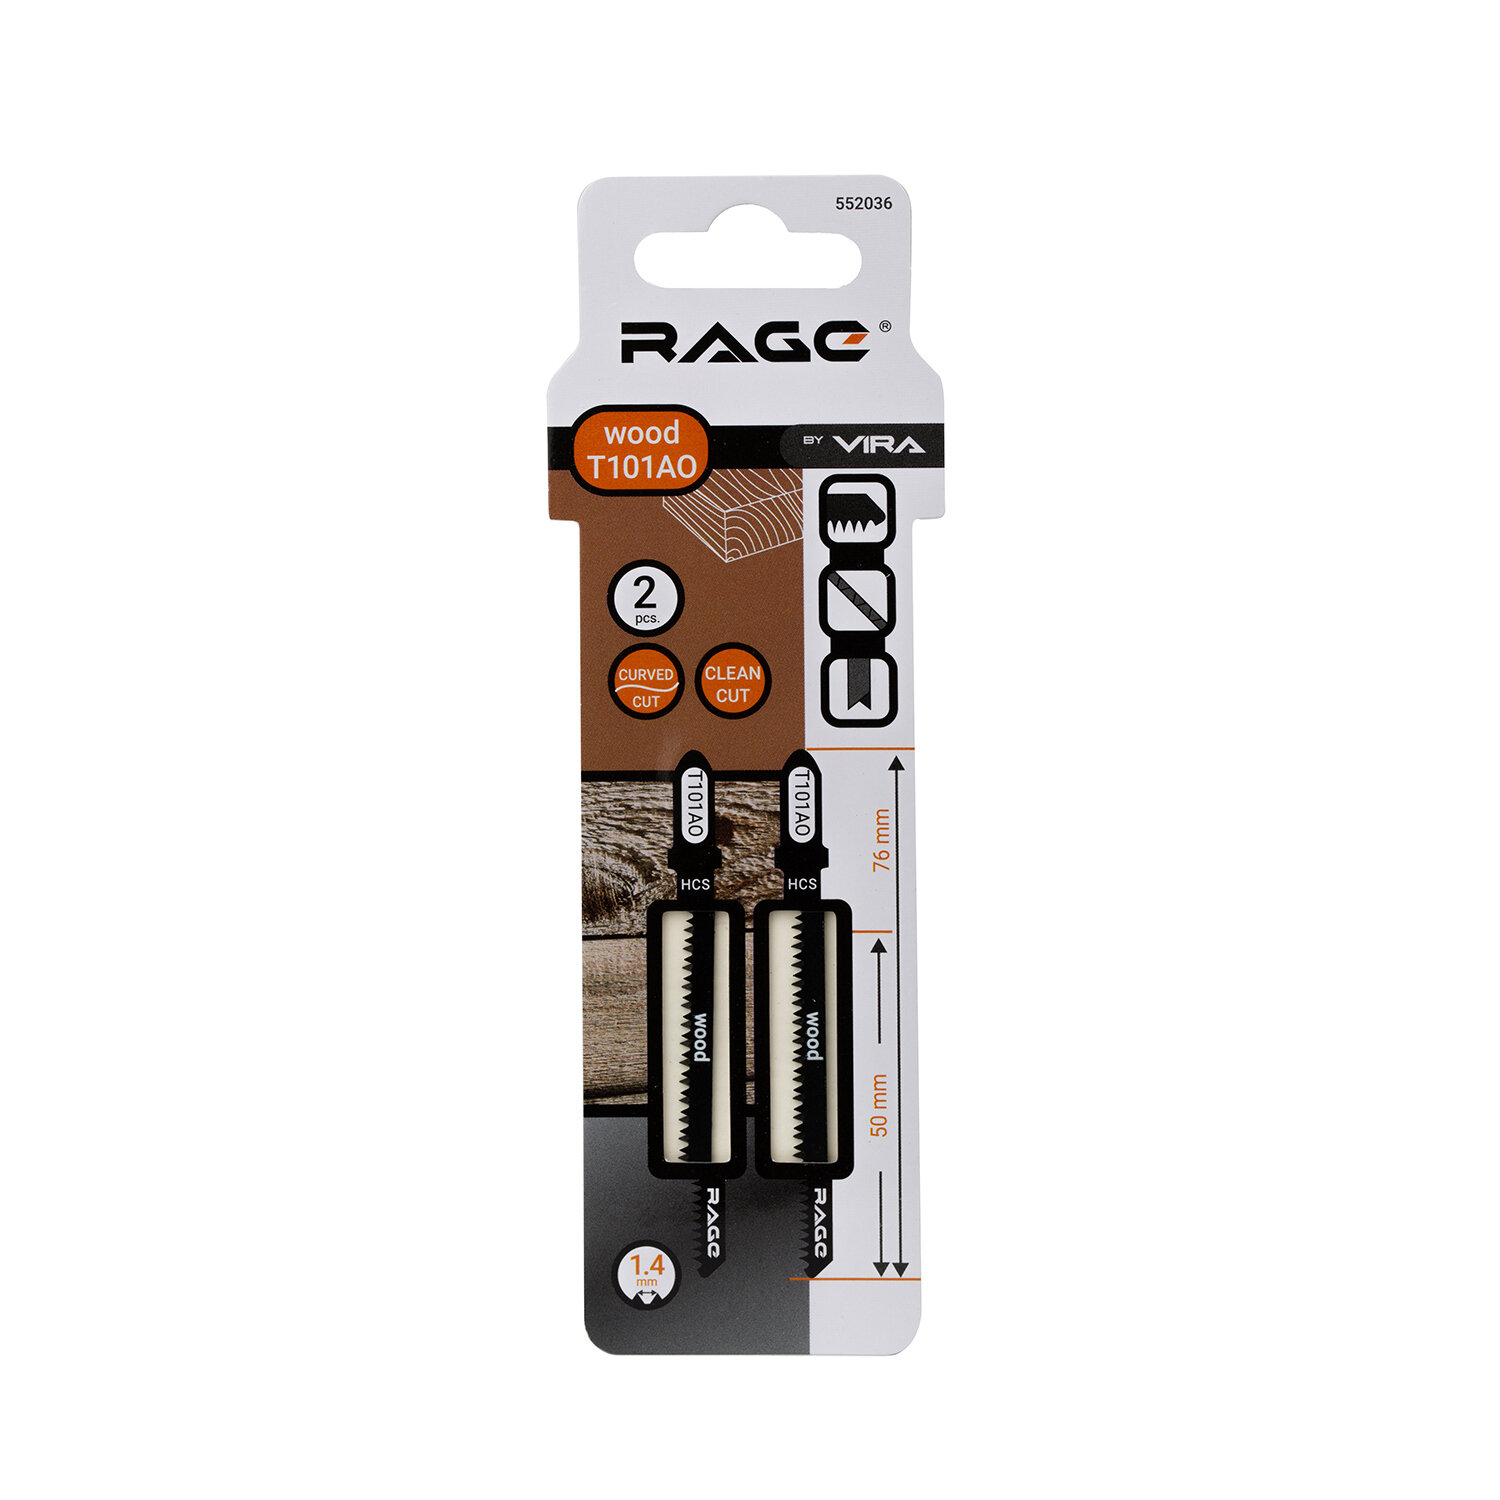 Пилки для лобзика Rage by Vira T101AO (552036) по дереву L50 мм криволинейный рез (2 шт.)